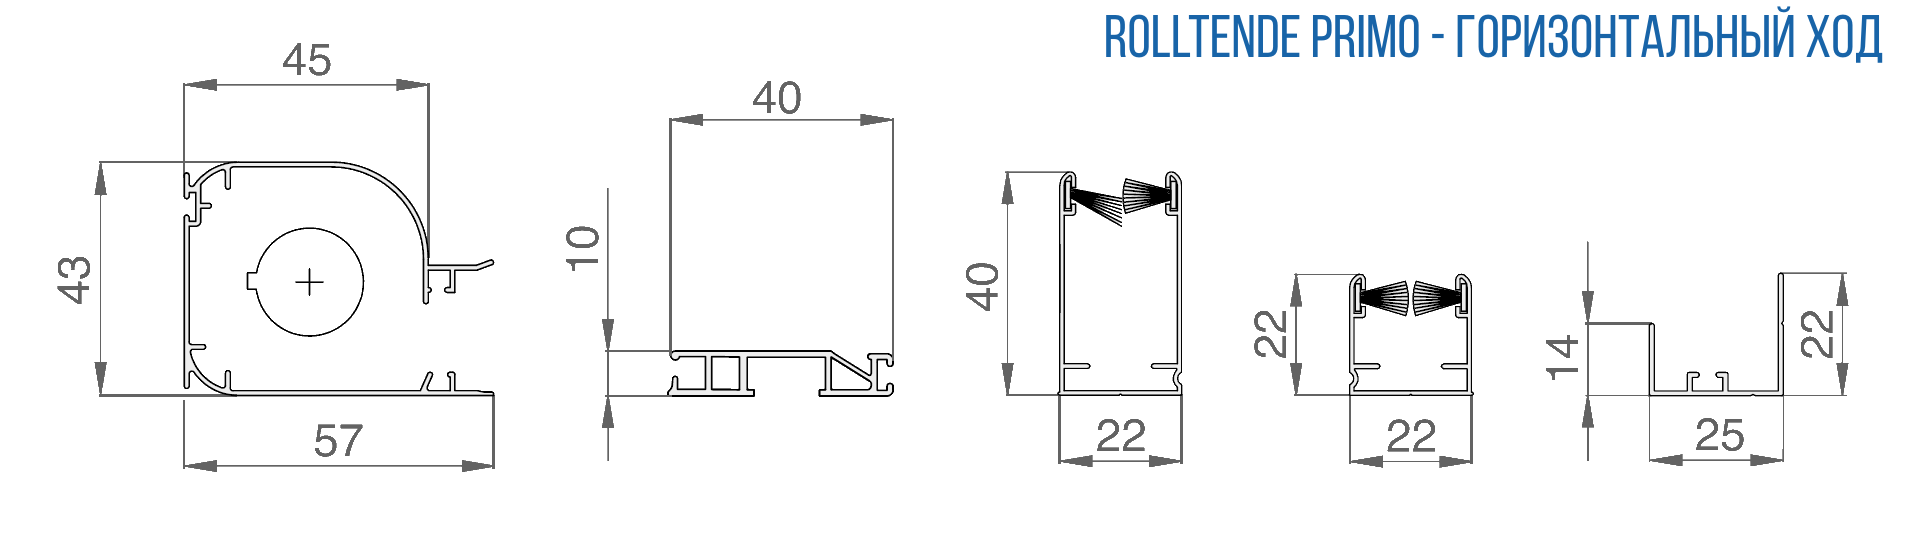 Профили москитной рулонной системы RollTende Primo с вертикальным ходом